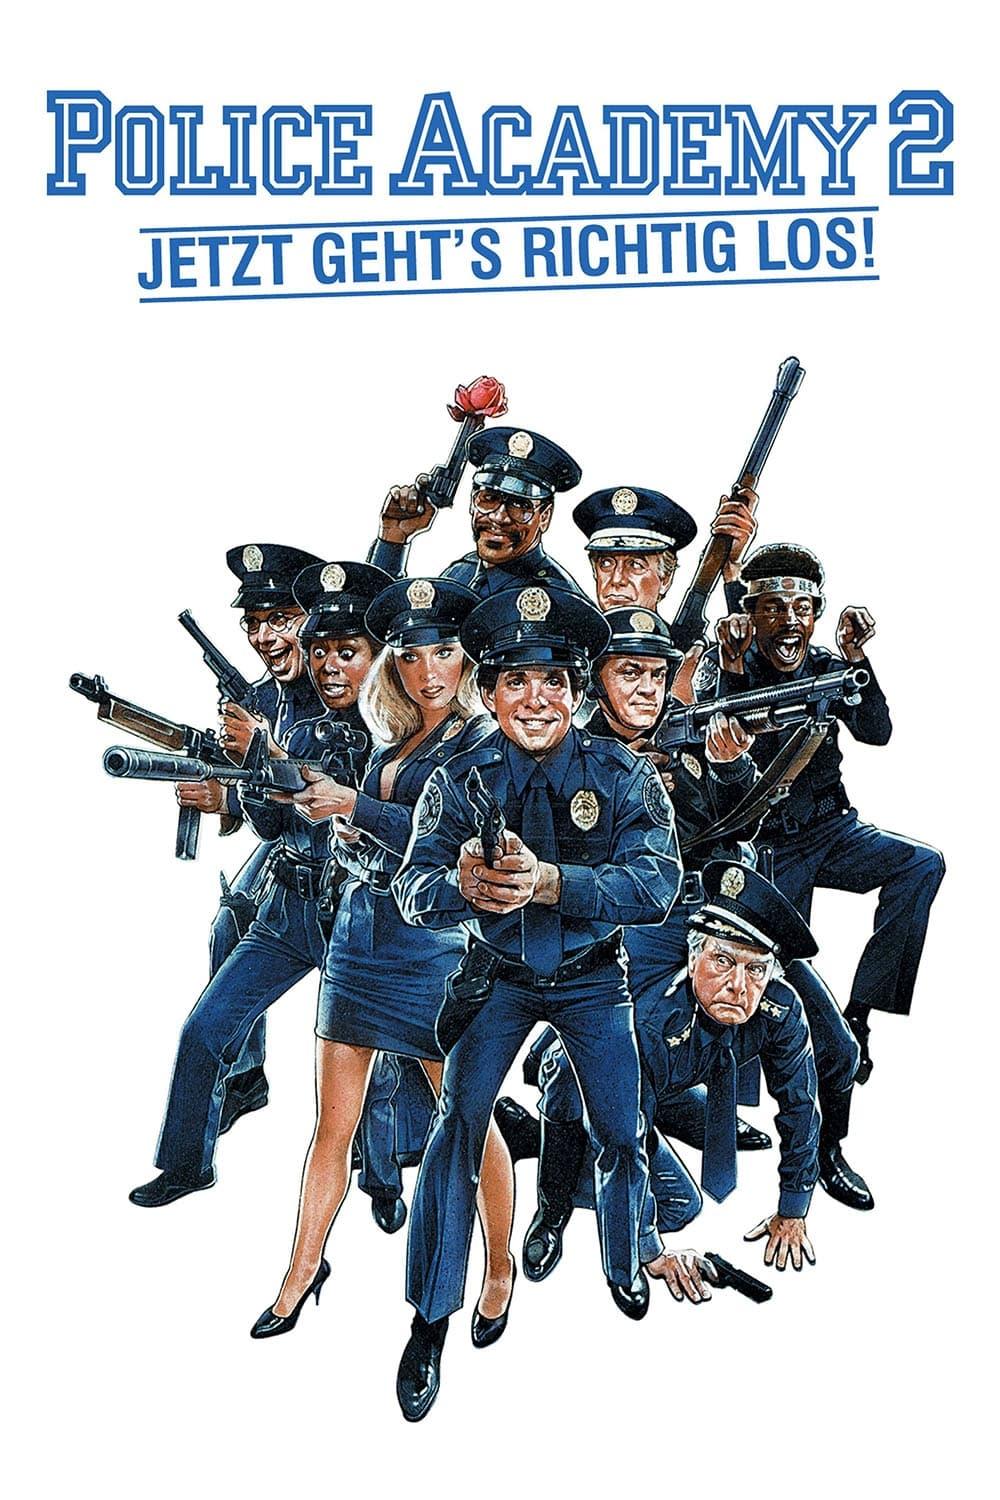 Police Academy 2 - Jetzt geht’s erst richtig los poster